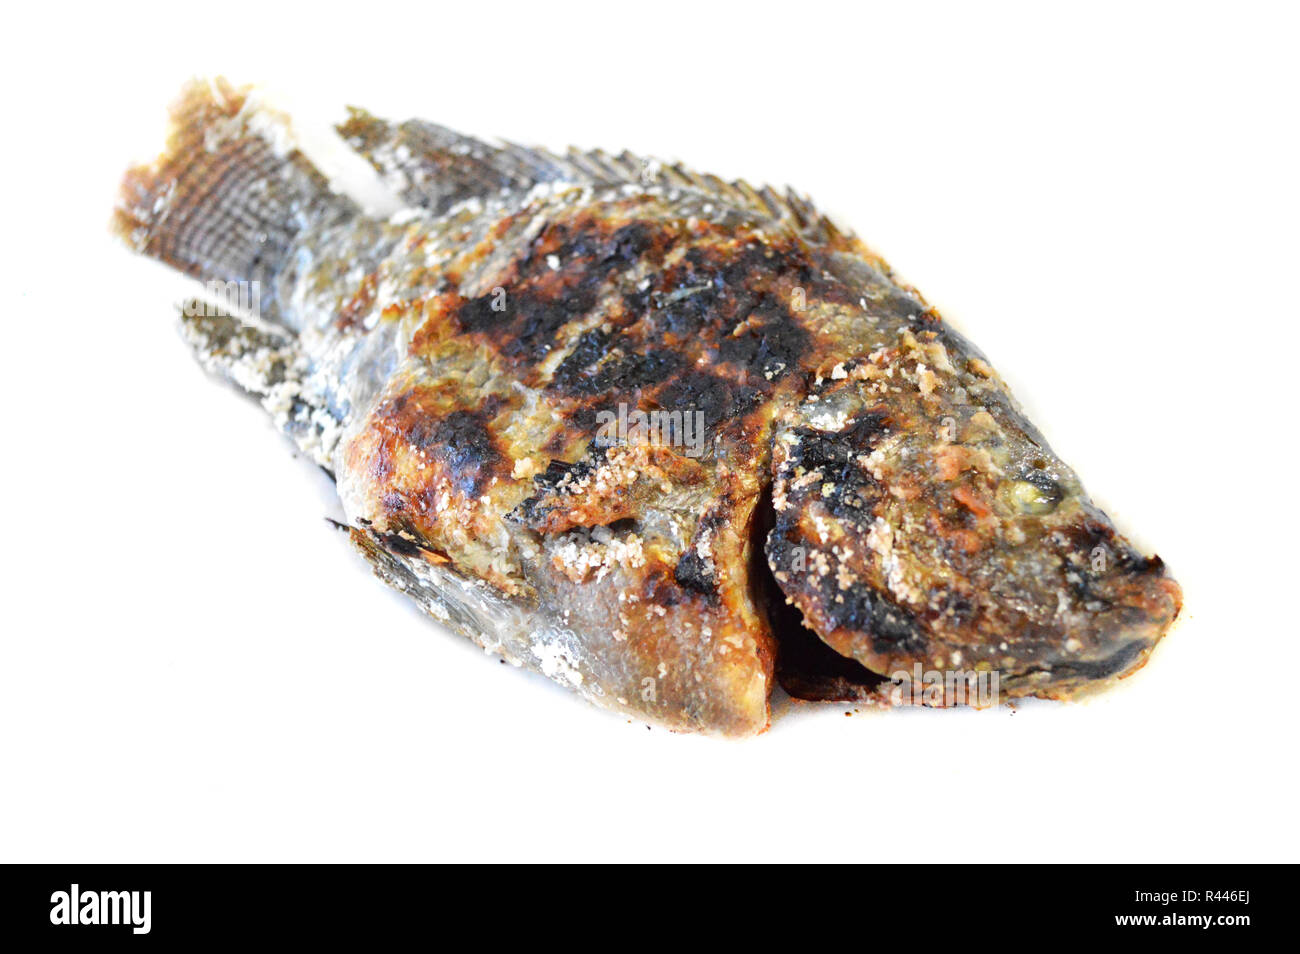 Le poisson Tilapia tilapia / isolés du poisson grillé avec du sel dans un style asiatique foof isolé sur fond blanc - Gravure de poisson Tilapia thaïlandais brûlé Banque D'Images